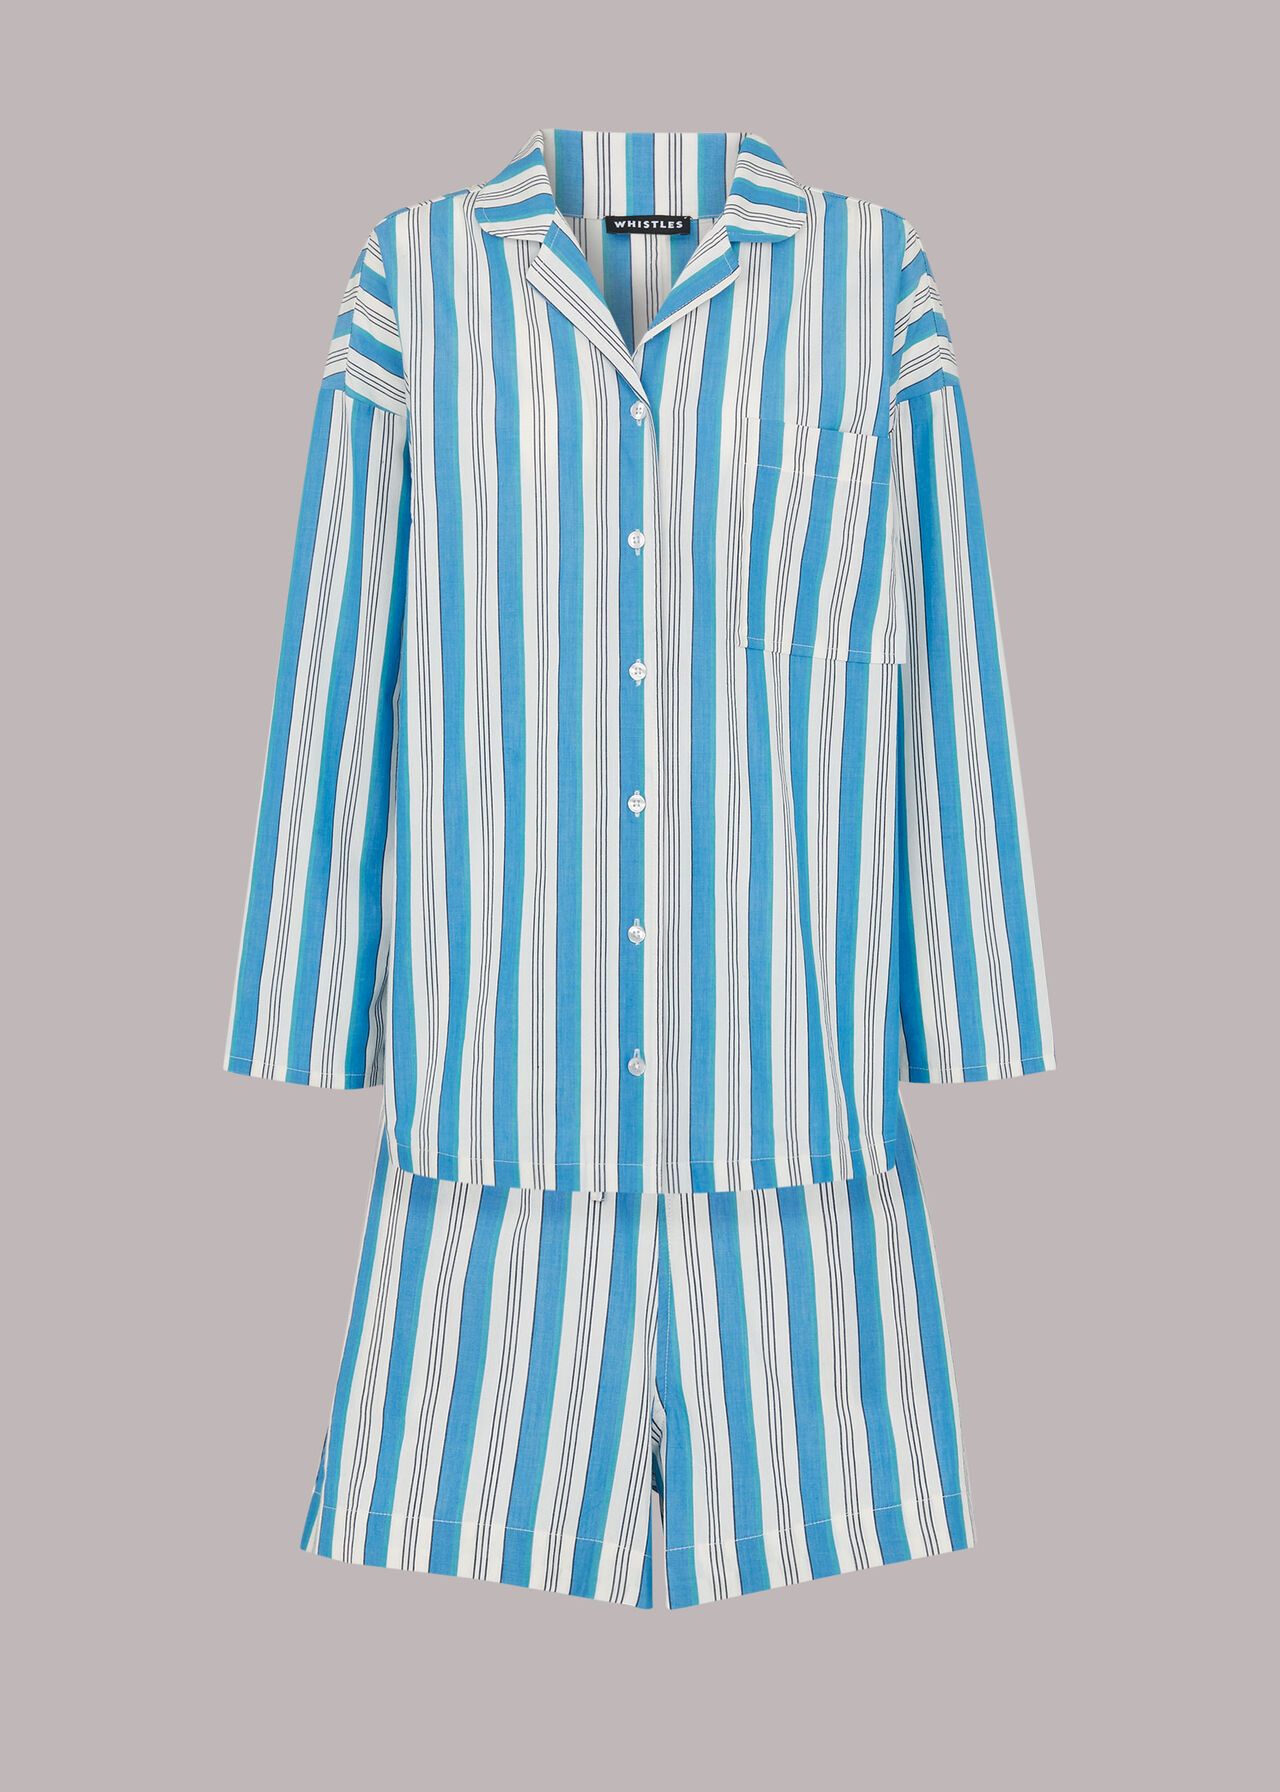 Gracie Stripe Pyjamas